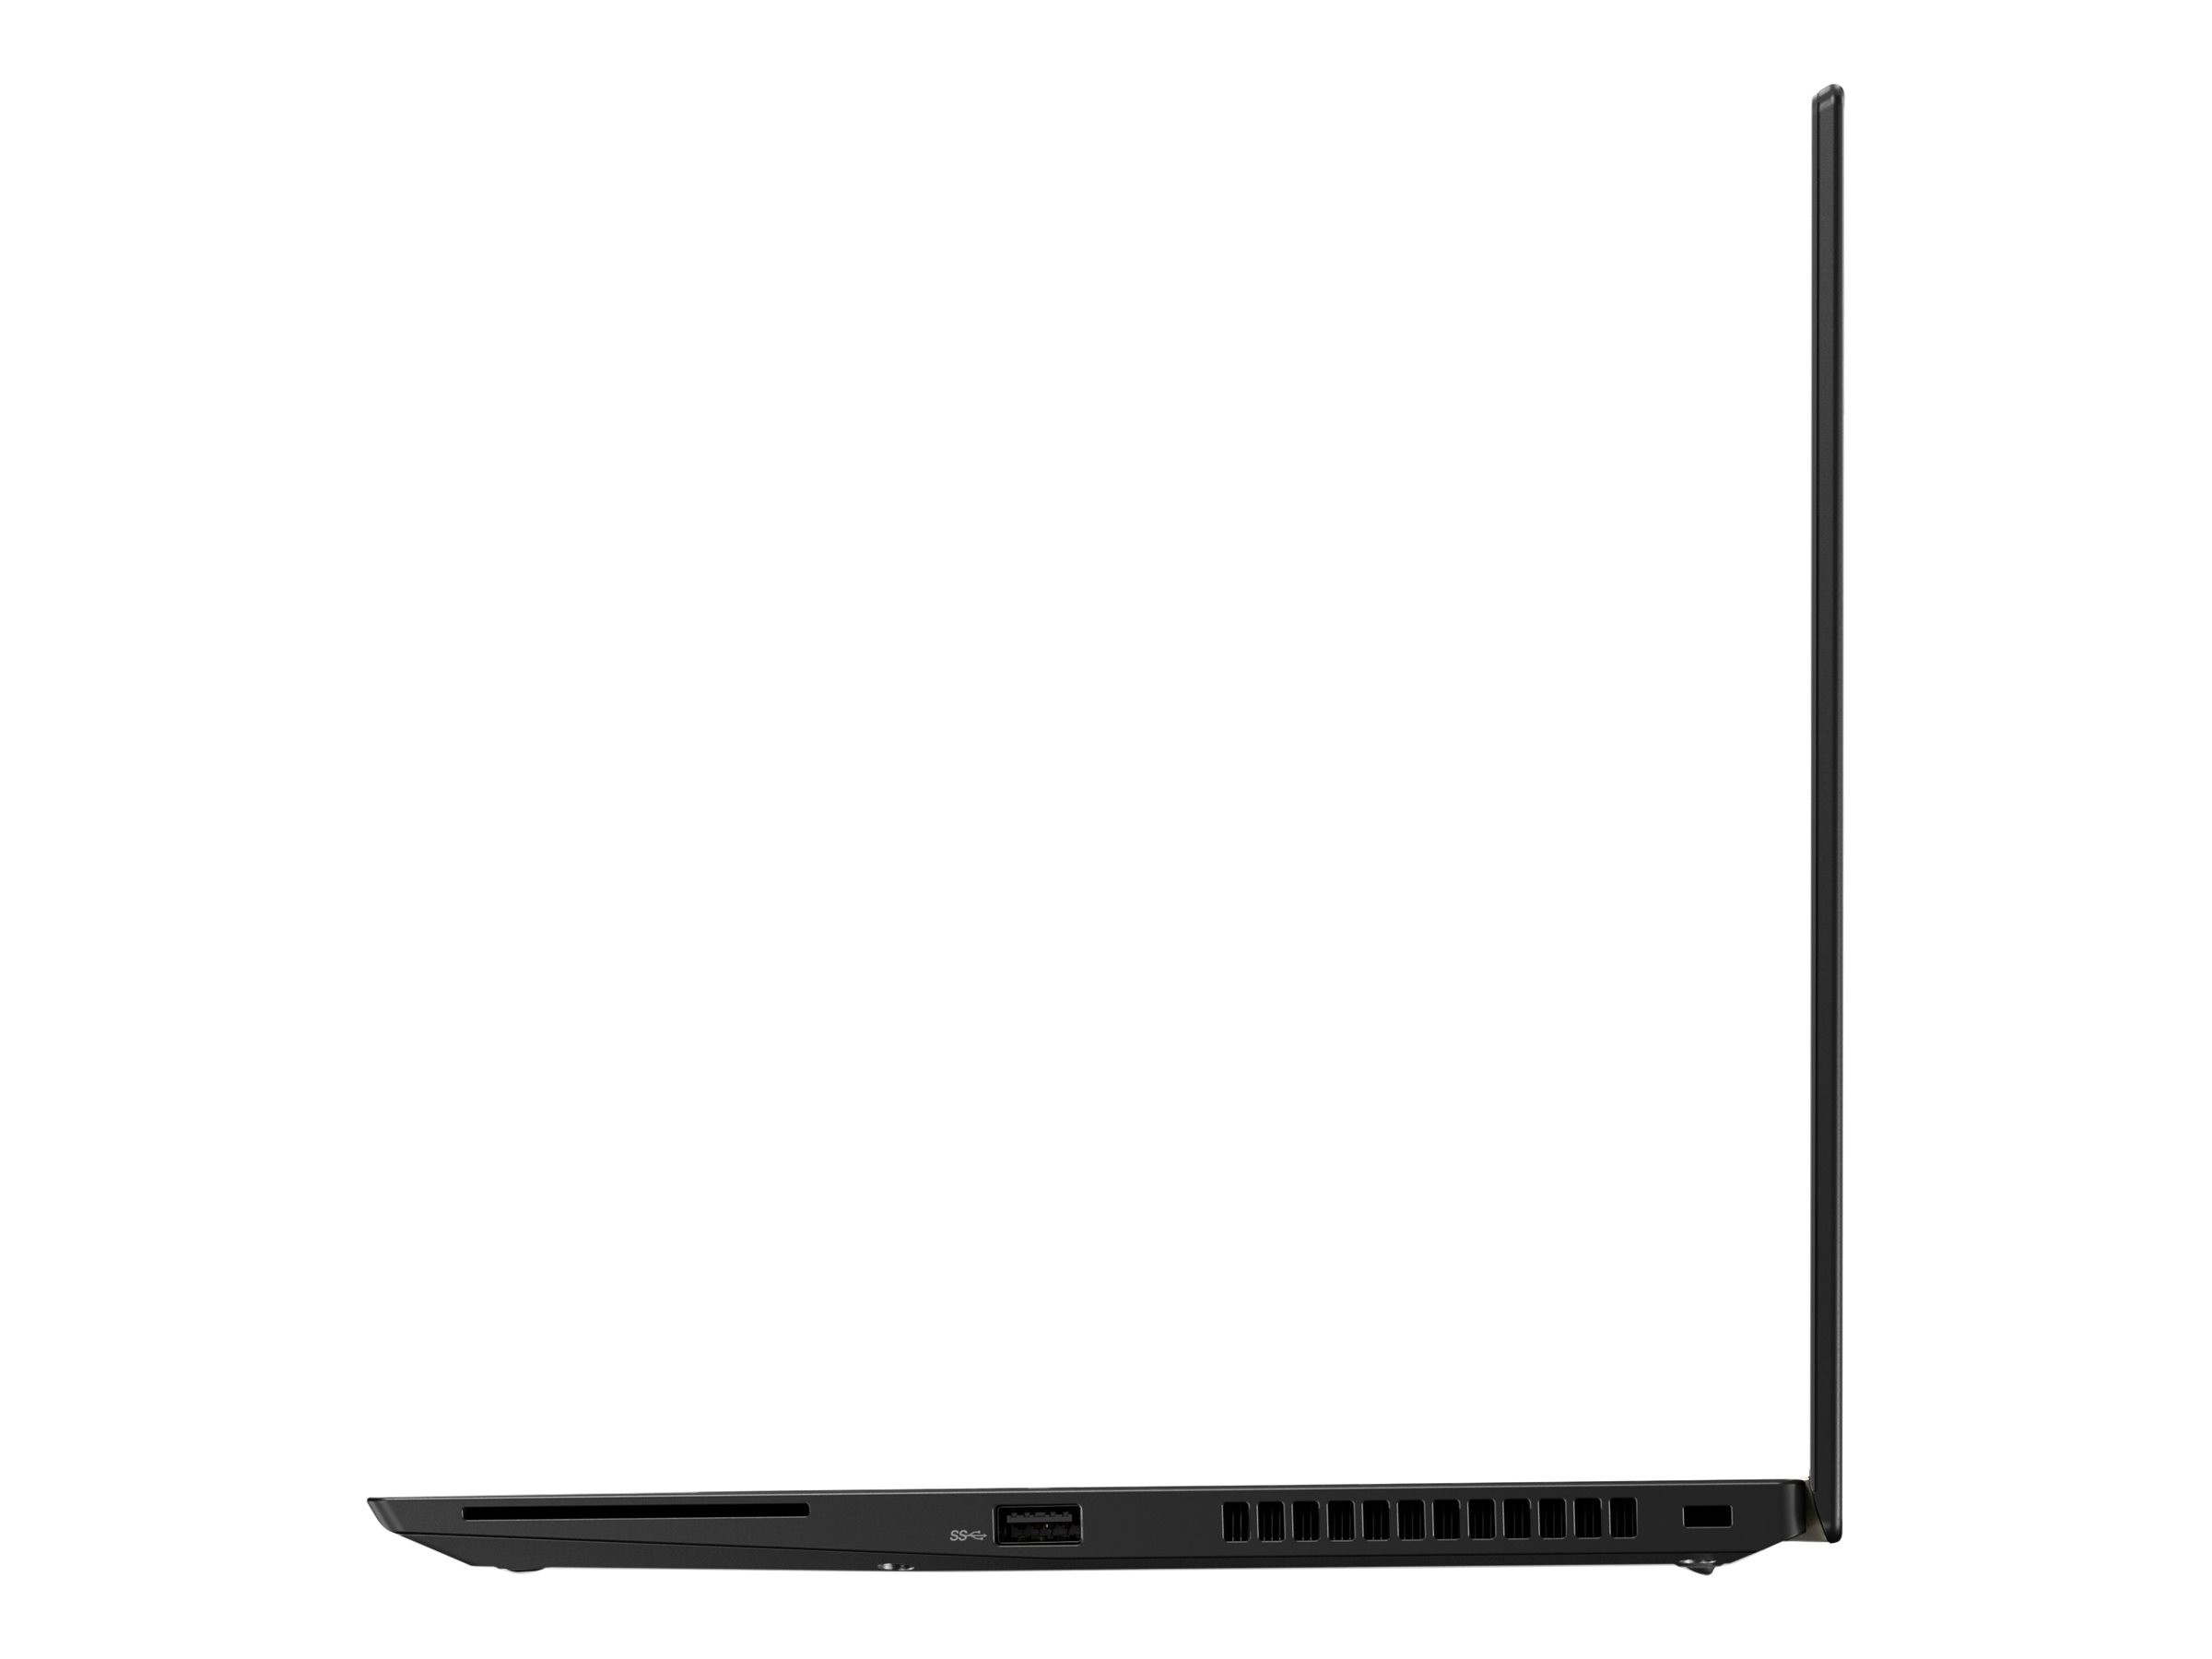 Lenovo ThinkPad T480s Full HD Touch Intel Core i5-8350U 12GB RAM 512GB SSD W10P